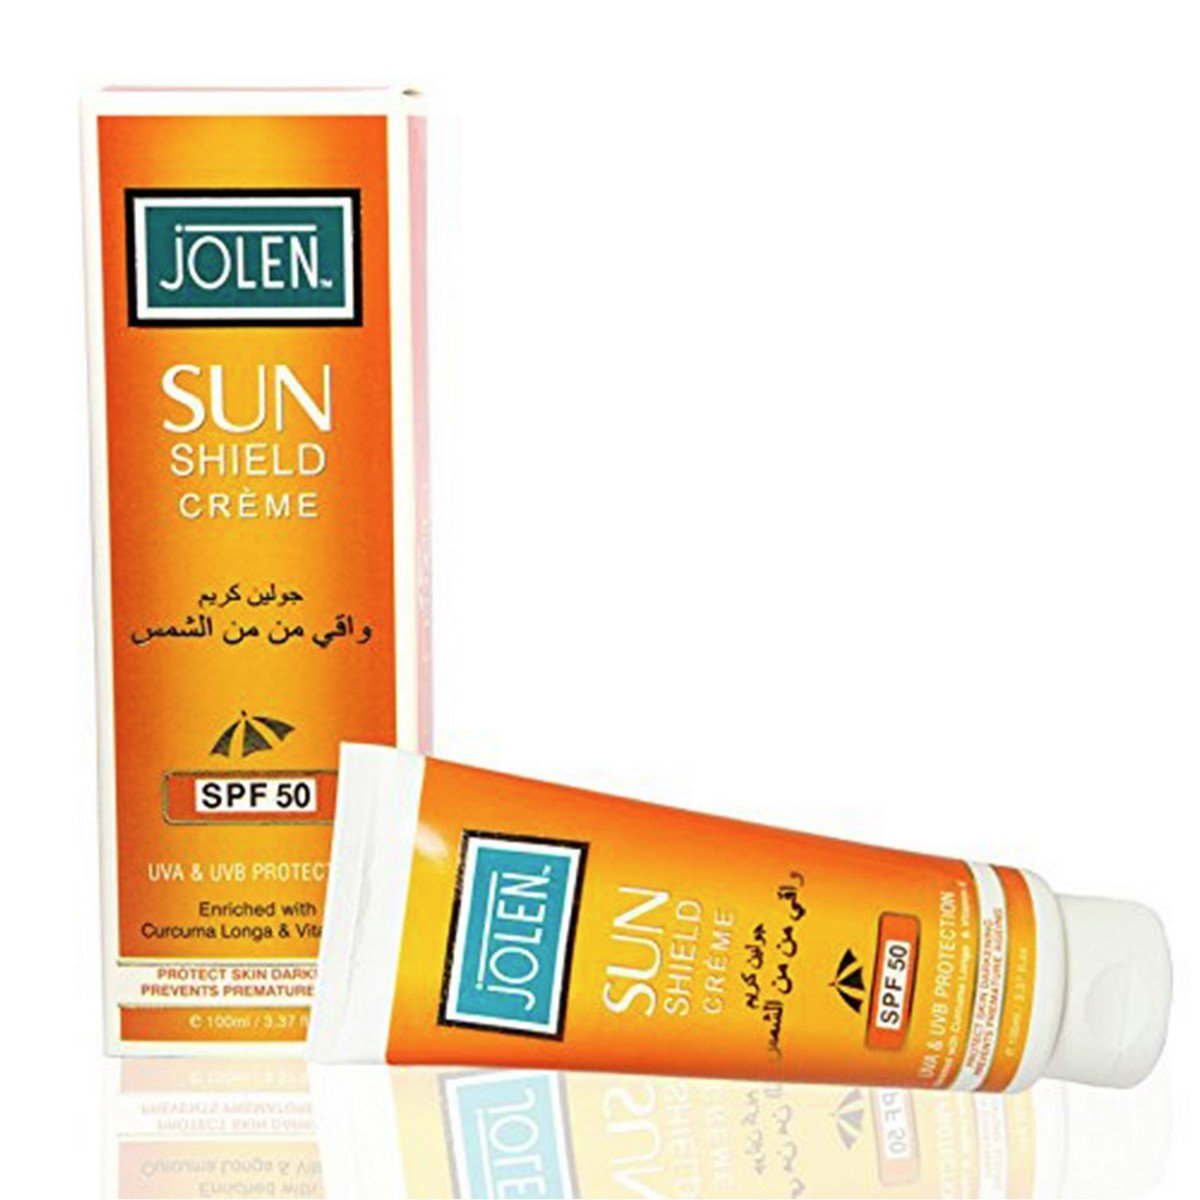 Jolen Sun Shield Creme SPF50 100g